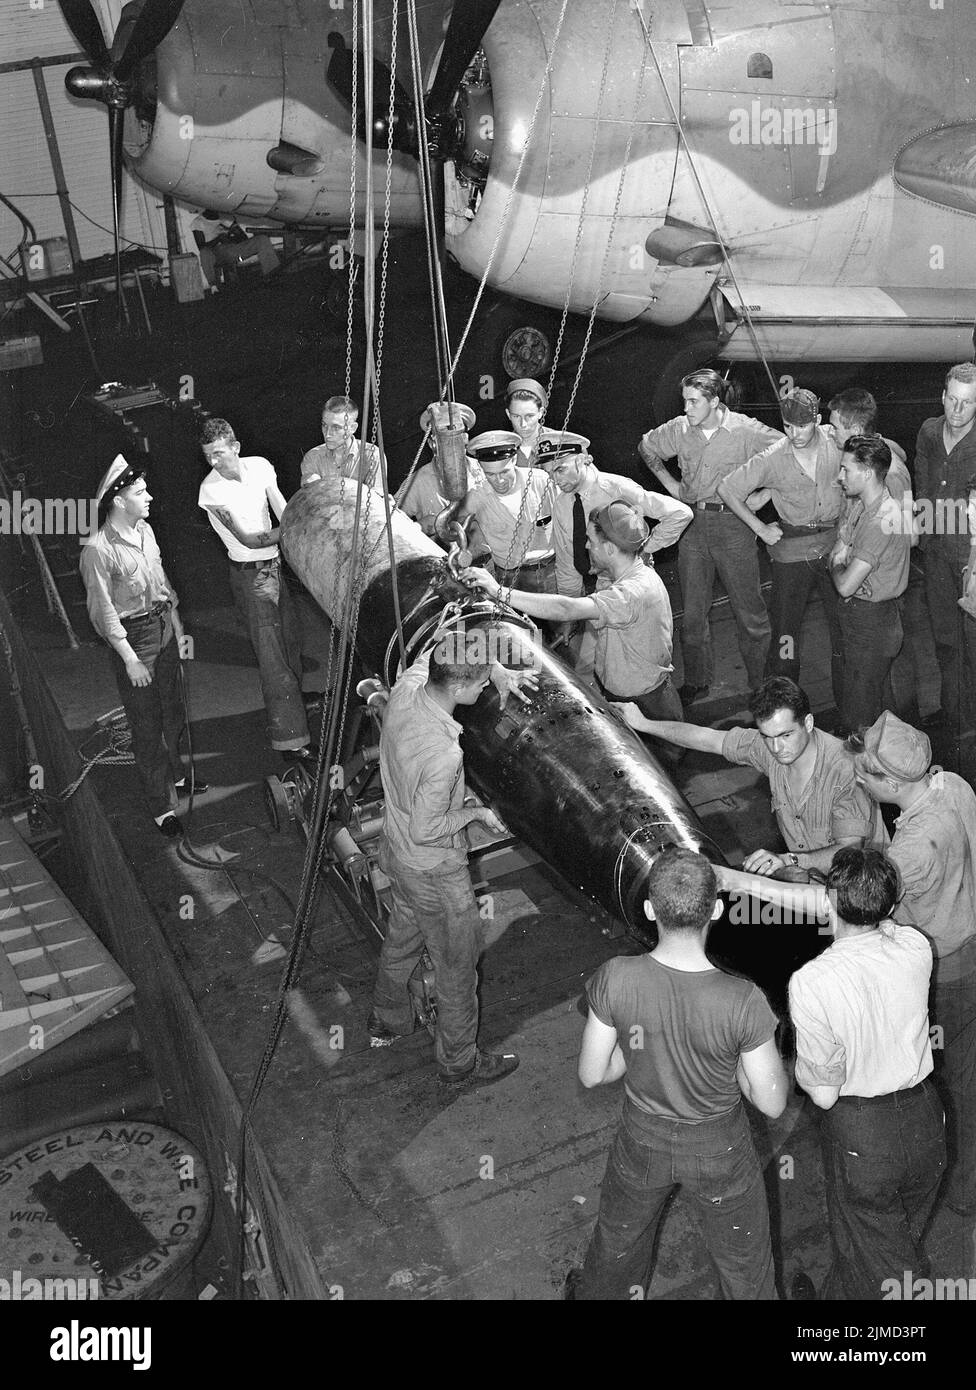 Die Flugbesatzung bereitet einen Torpedo an Bord einer US-amerikanischen Fluggesellschaft vor, wobei Grumman Avenger Torpedo-Bomber im Hintergrund sind. Stockfoto